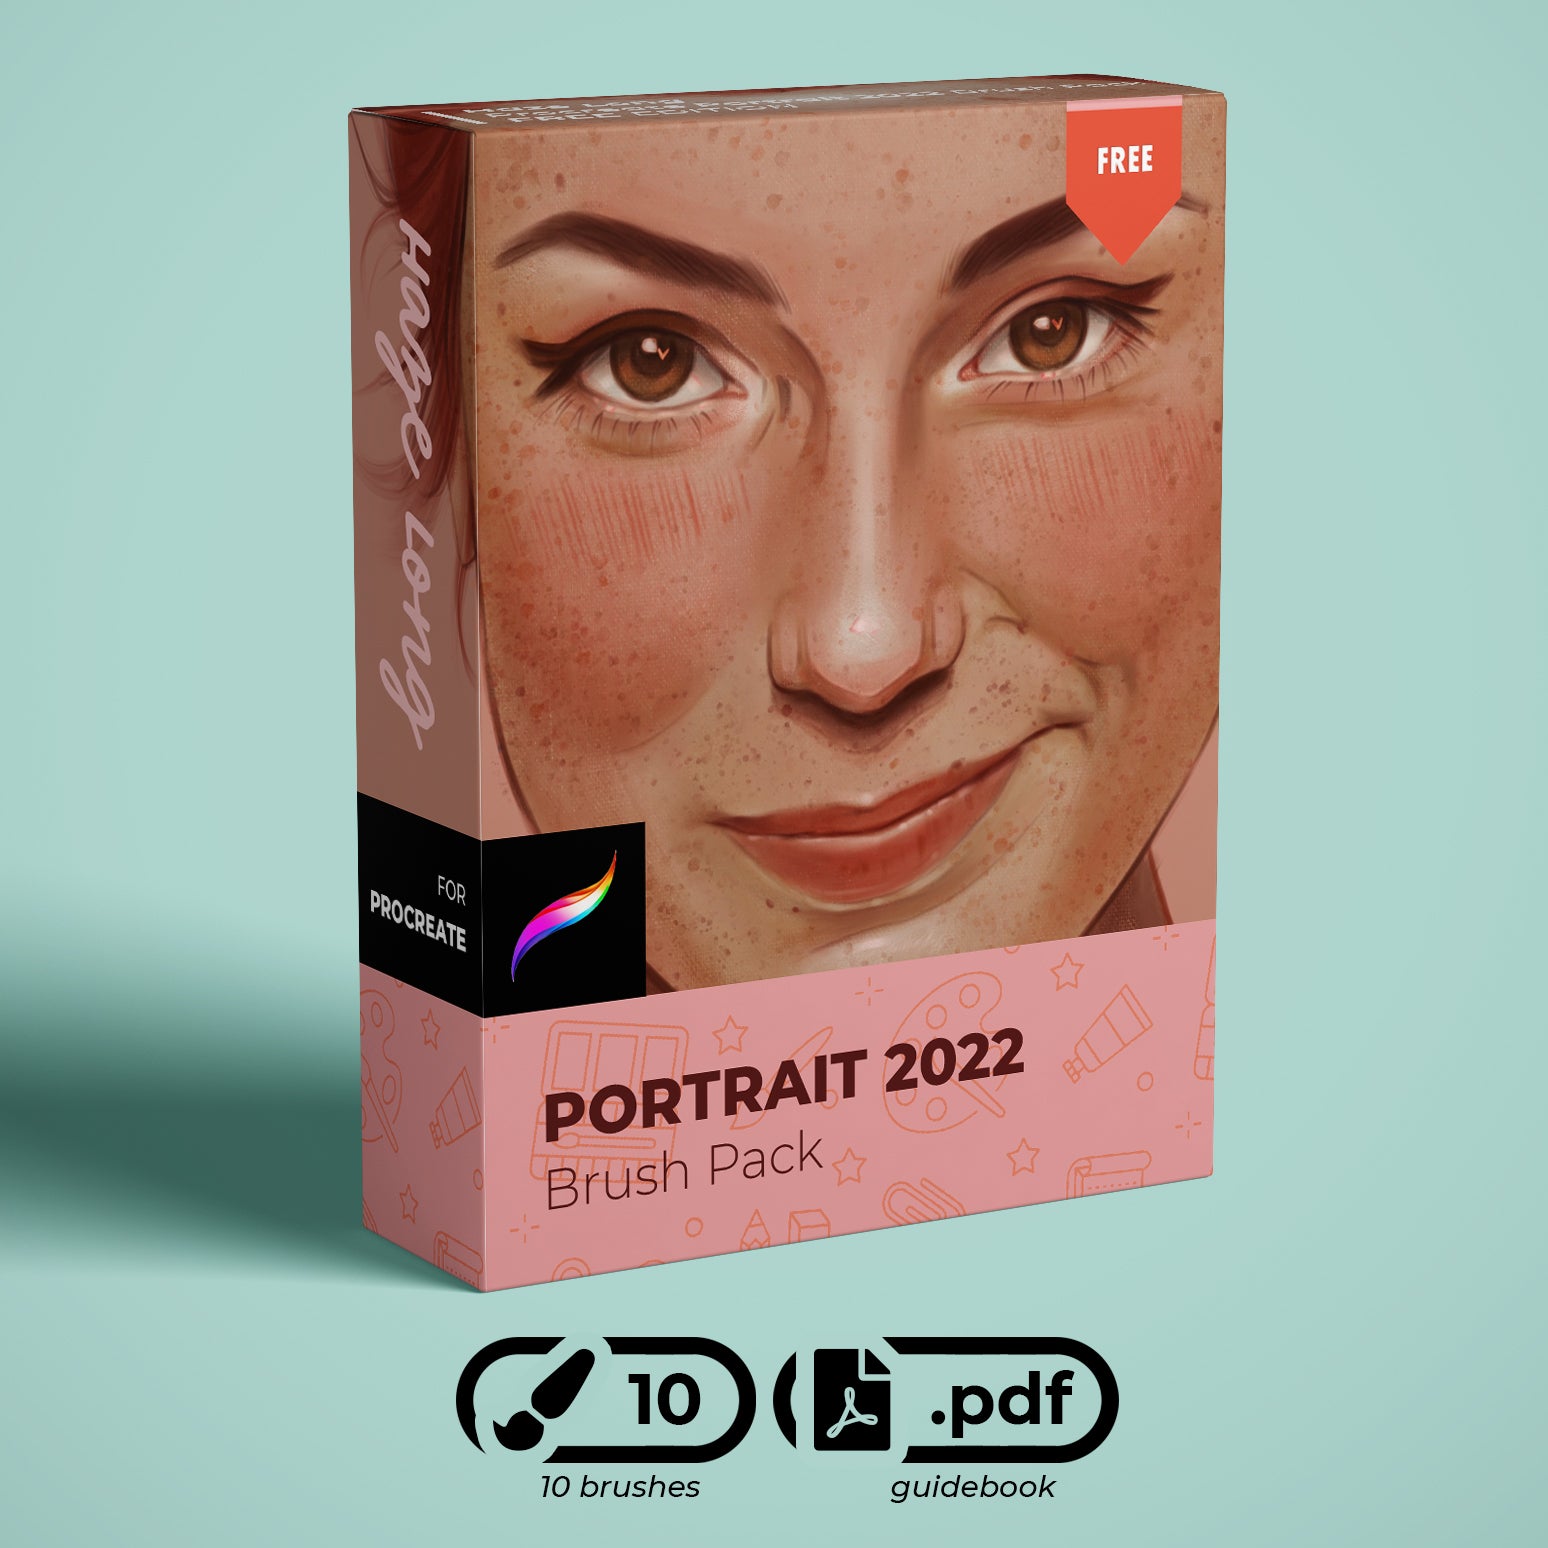 Haze Long Procreate Portrait 2022 Brush Pack - Haze Long Fine Art and Resources Store